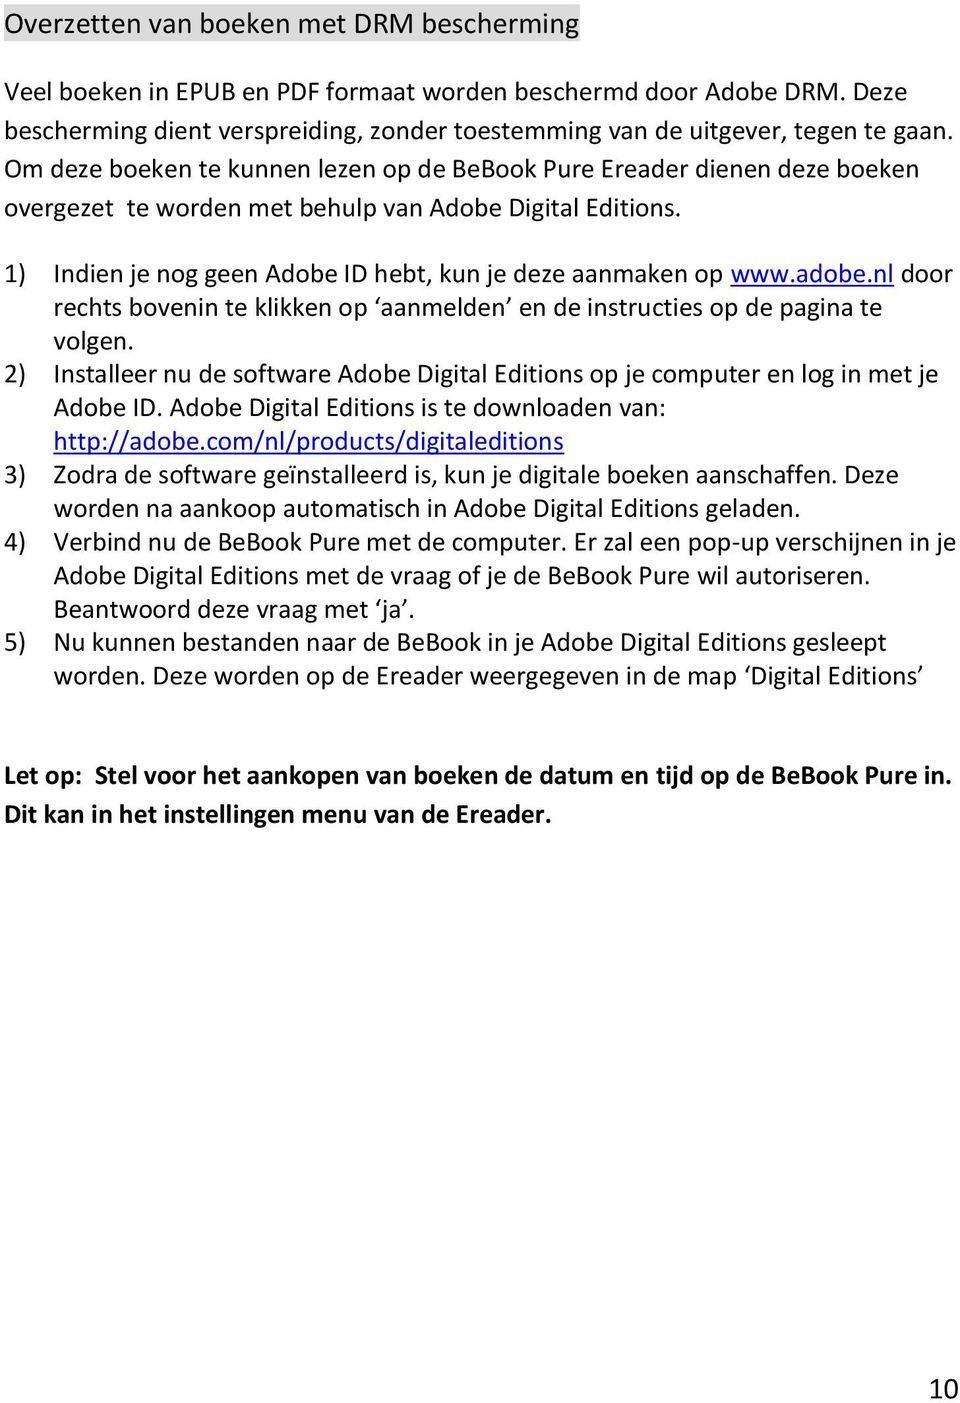 adobe.nl door rechts bovenin te klikken op aanmelden en de instructies op de pagina te volgen. 2) Installeer nu de software Adobe Digital Editions op je computer en log in met je Adobe ID.